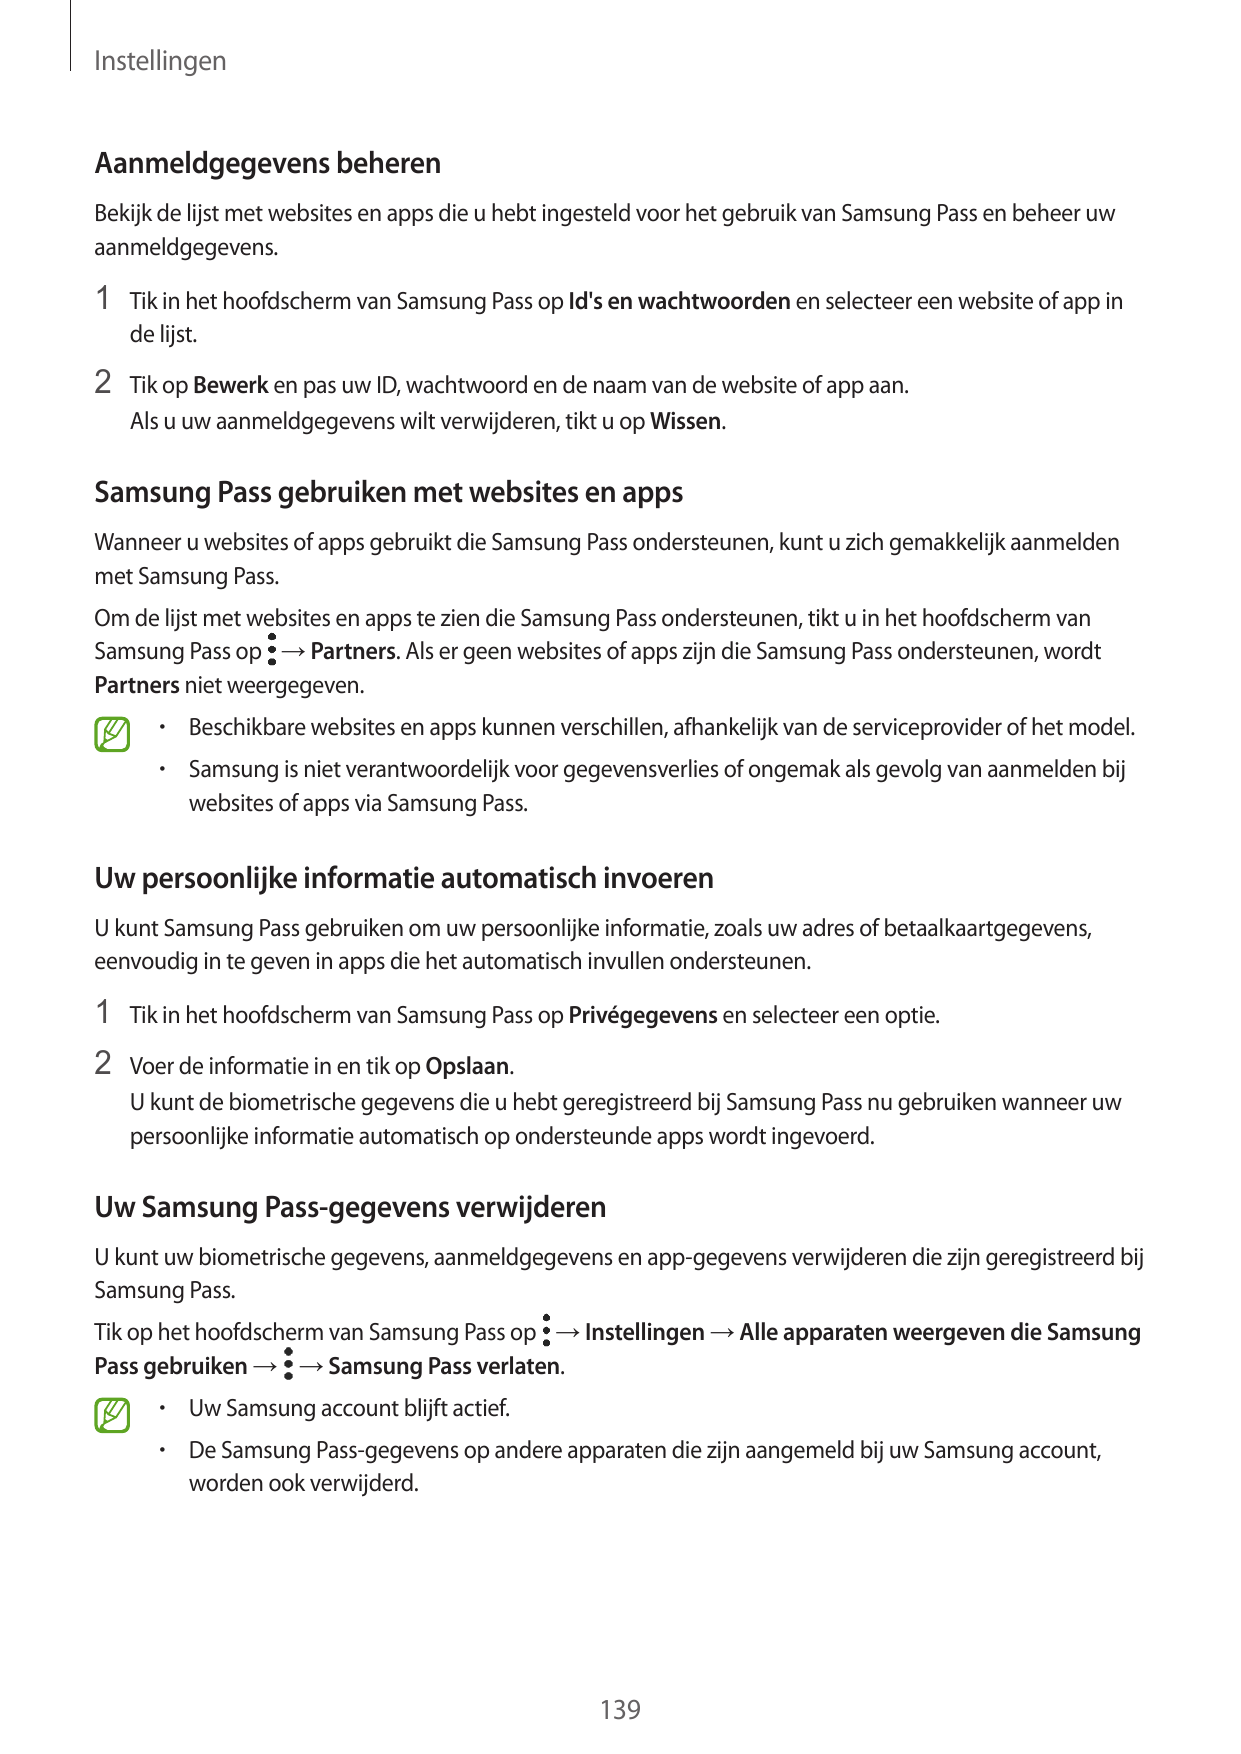 InstellingenAanmeldgegevens beherenBekijk de lijst met websites en apps die u hebt ingesteld voor het gebruik van Samsung Pass e